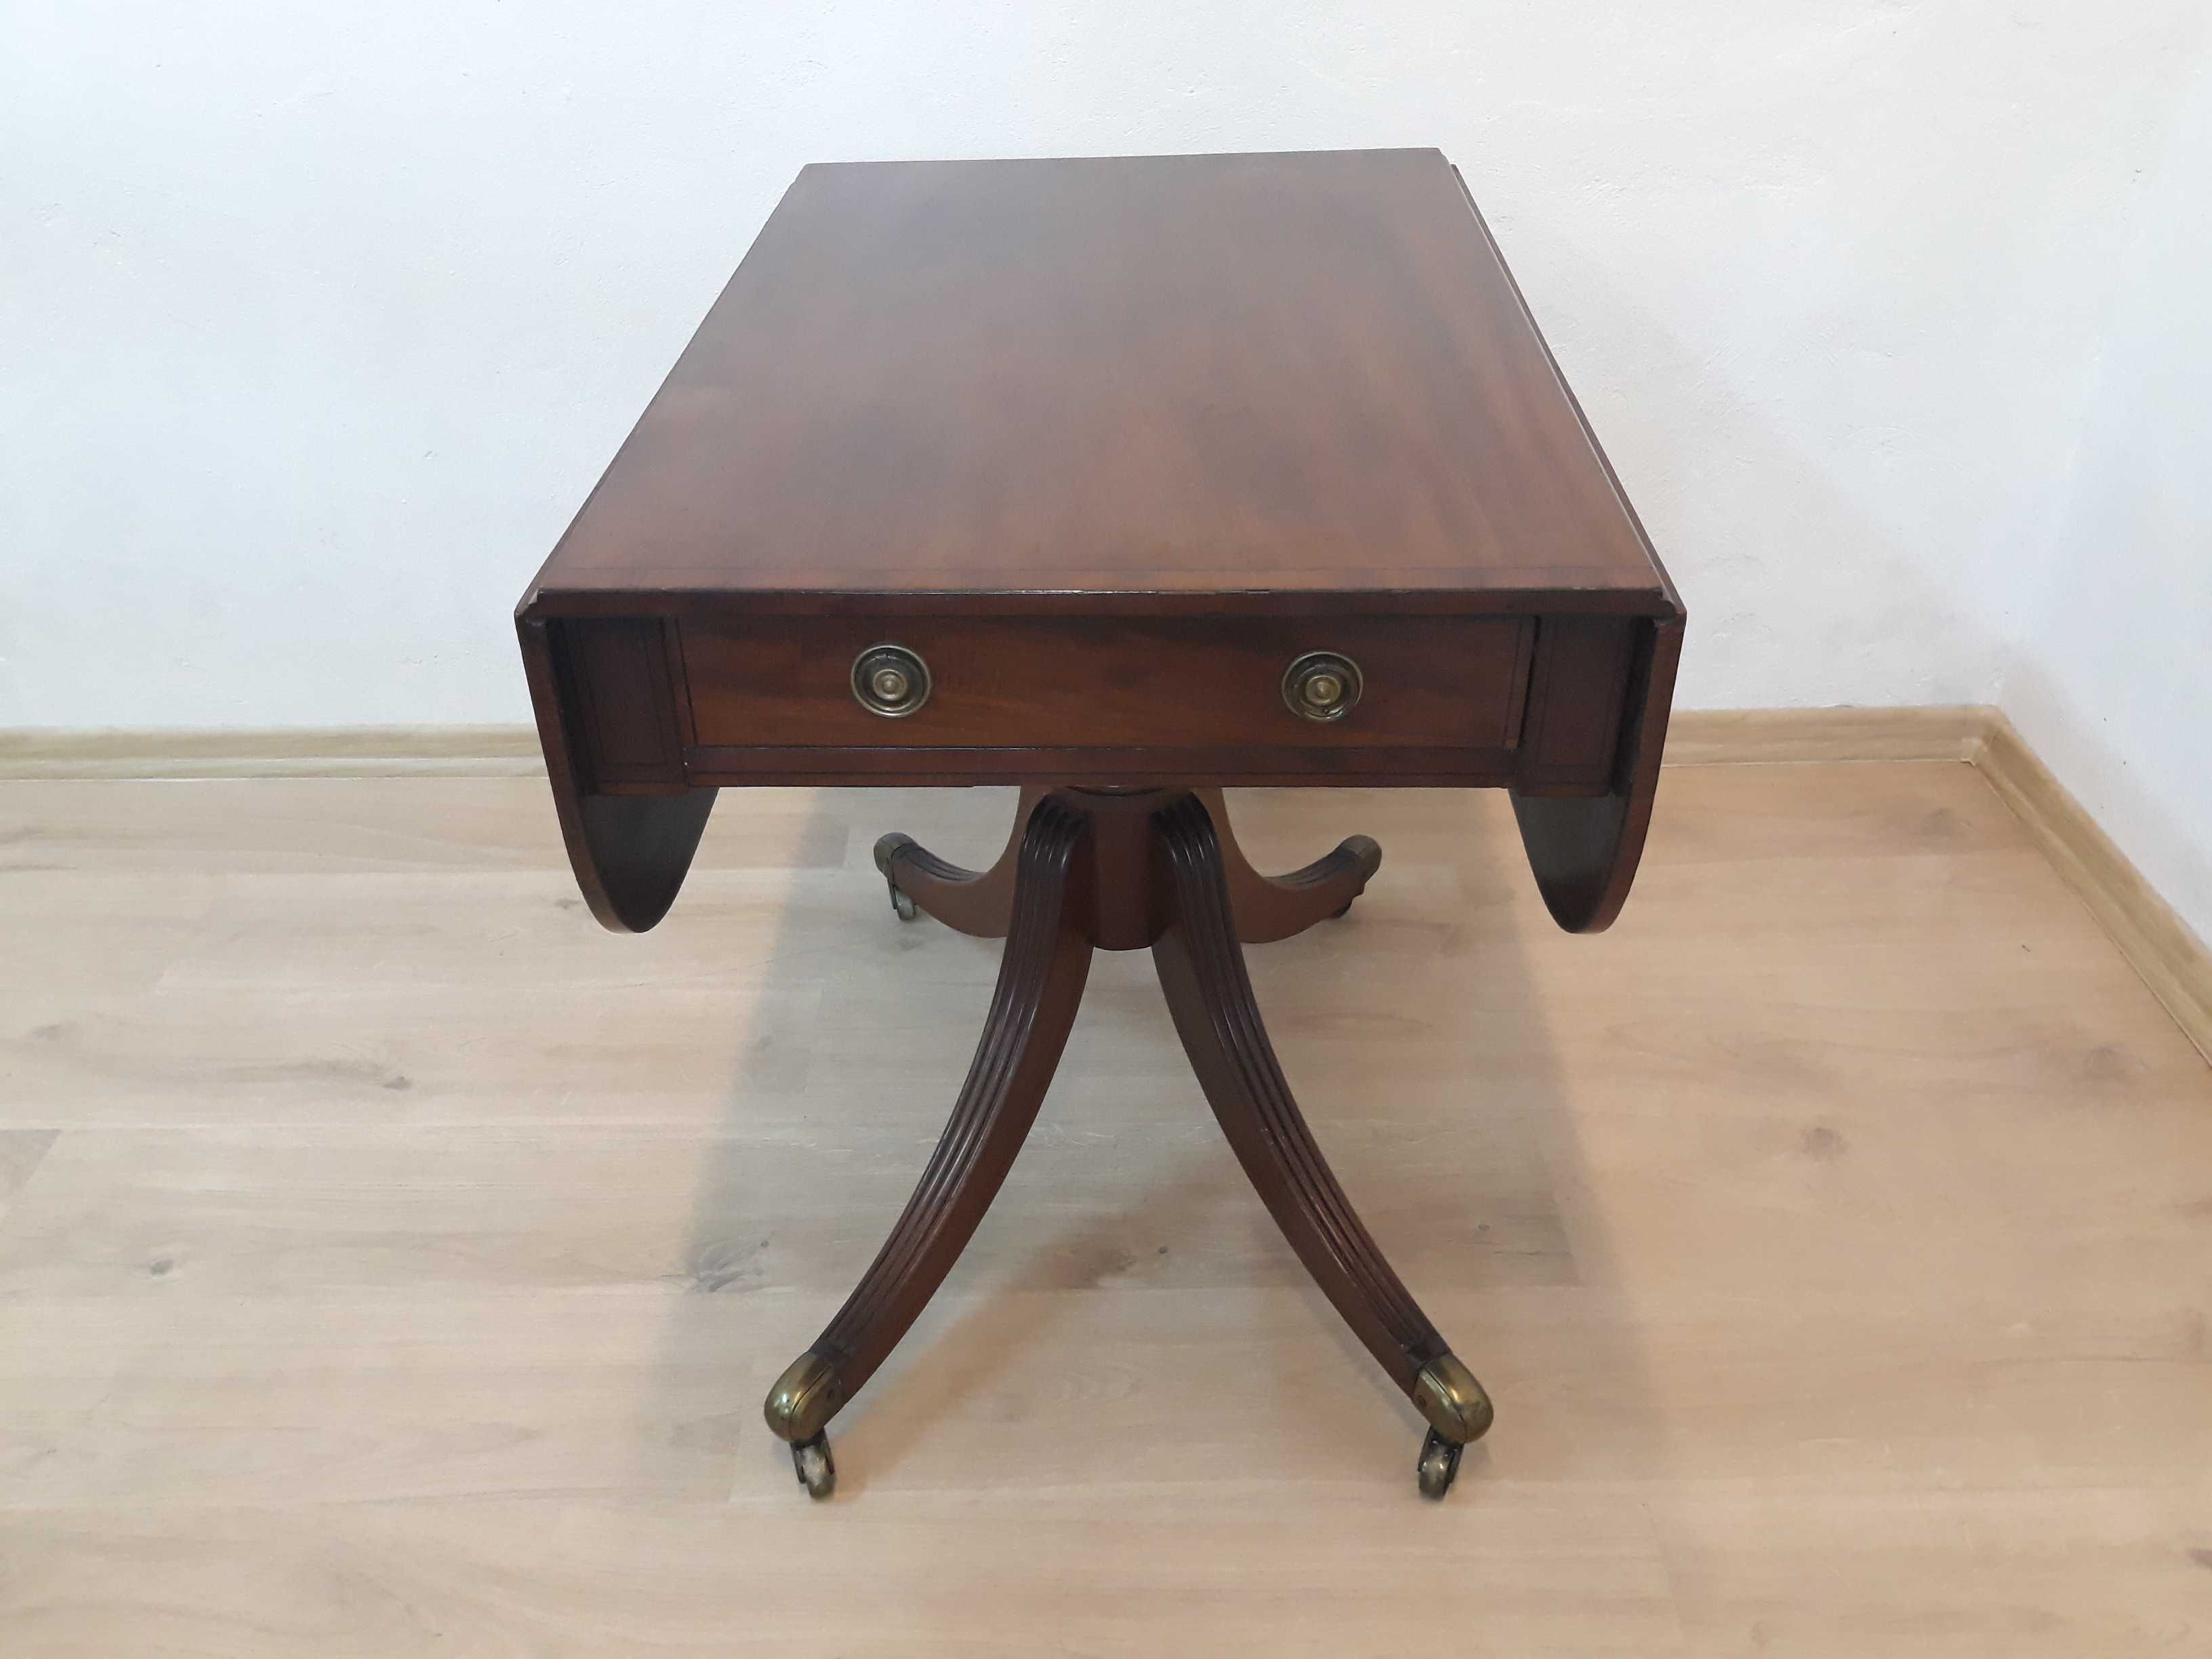 Zabytkowy stolik sofa table z rozkładanym blatem mosiężne nogi kółka